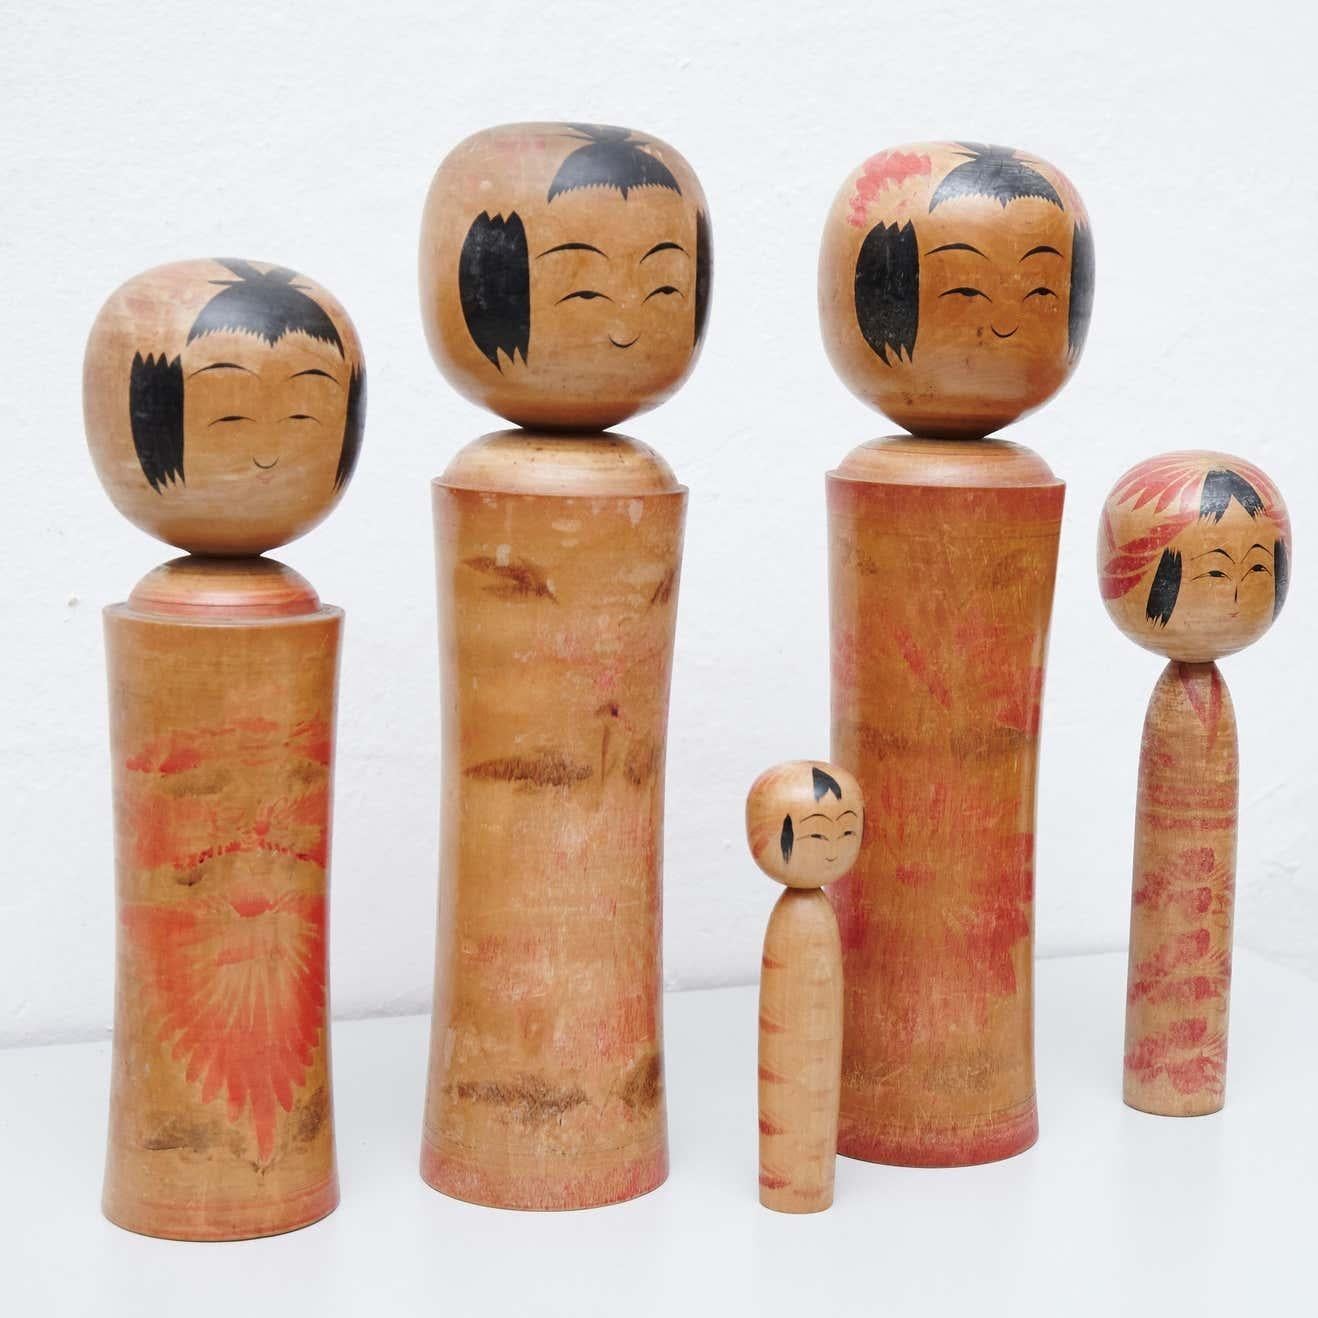 Mit diesem exquisiten Set aus 5 Kokeshi-Puppen verleihen Sie Ihrer Einrichtung einen Hauch von traditionellem japanischem Charme. Jede Puppe wird von geschickten Handwerkern aus Holz handgefertigt und hat einen einfachen Rumpf als Körper und einen